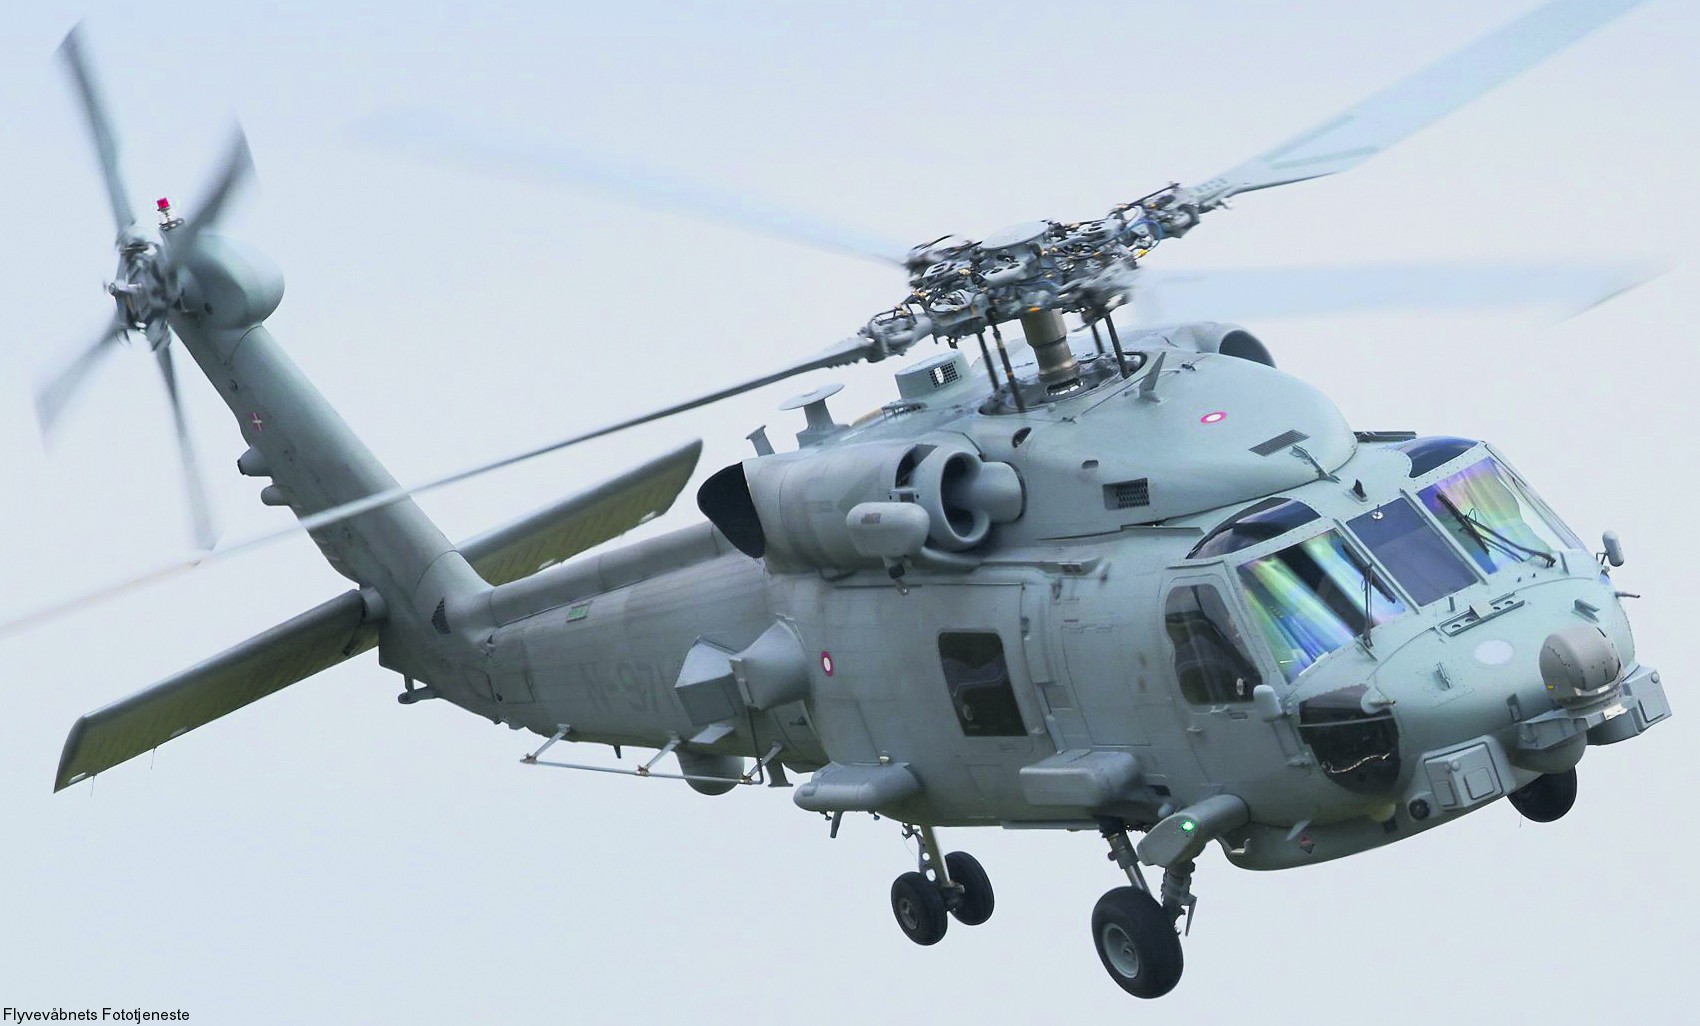 mh-60r seahawk royal danish navy air force flyvevåbnet kongelige danske marine sikorsky helicopter 723 eskadrille squadron karup 12